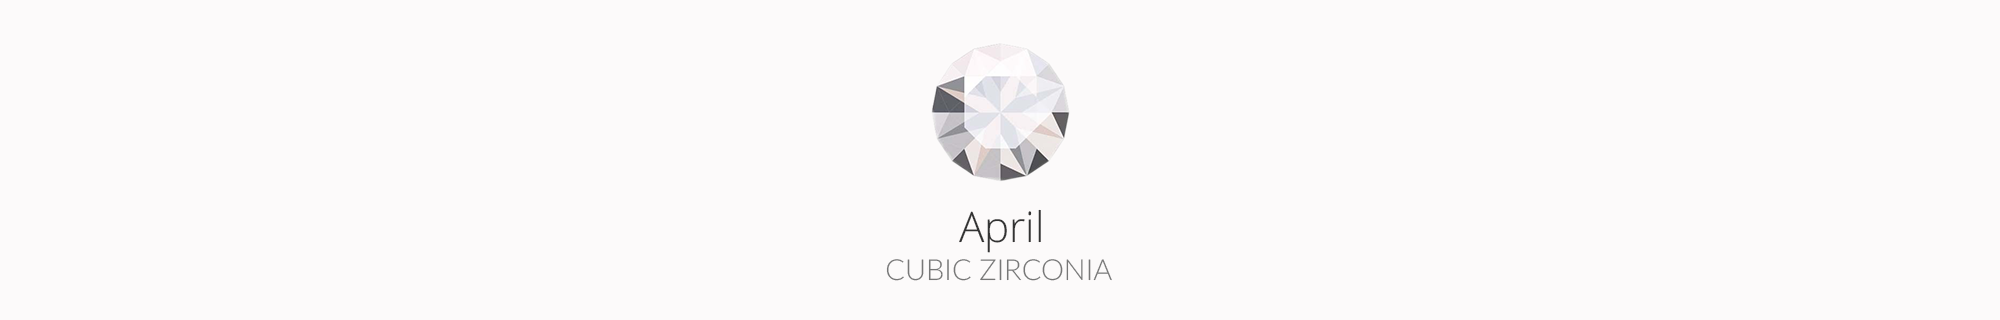 April - Cubic Zirconia